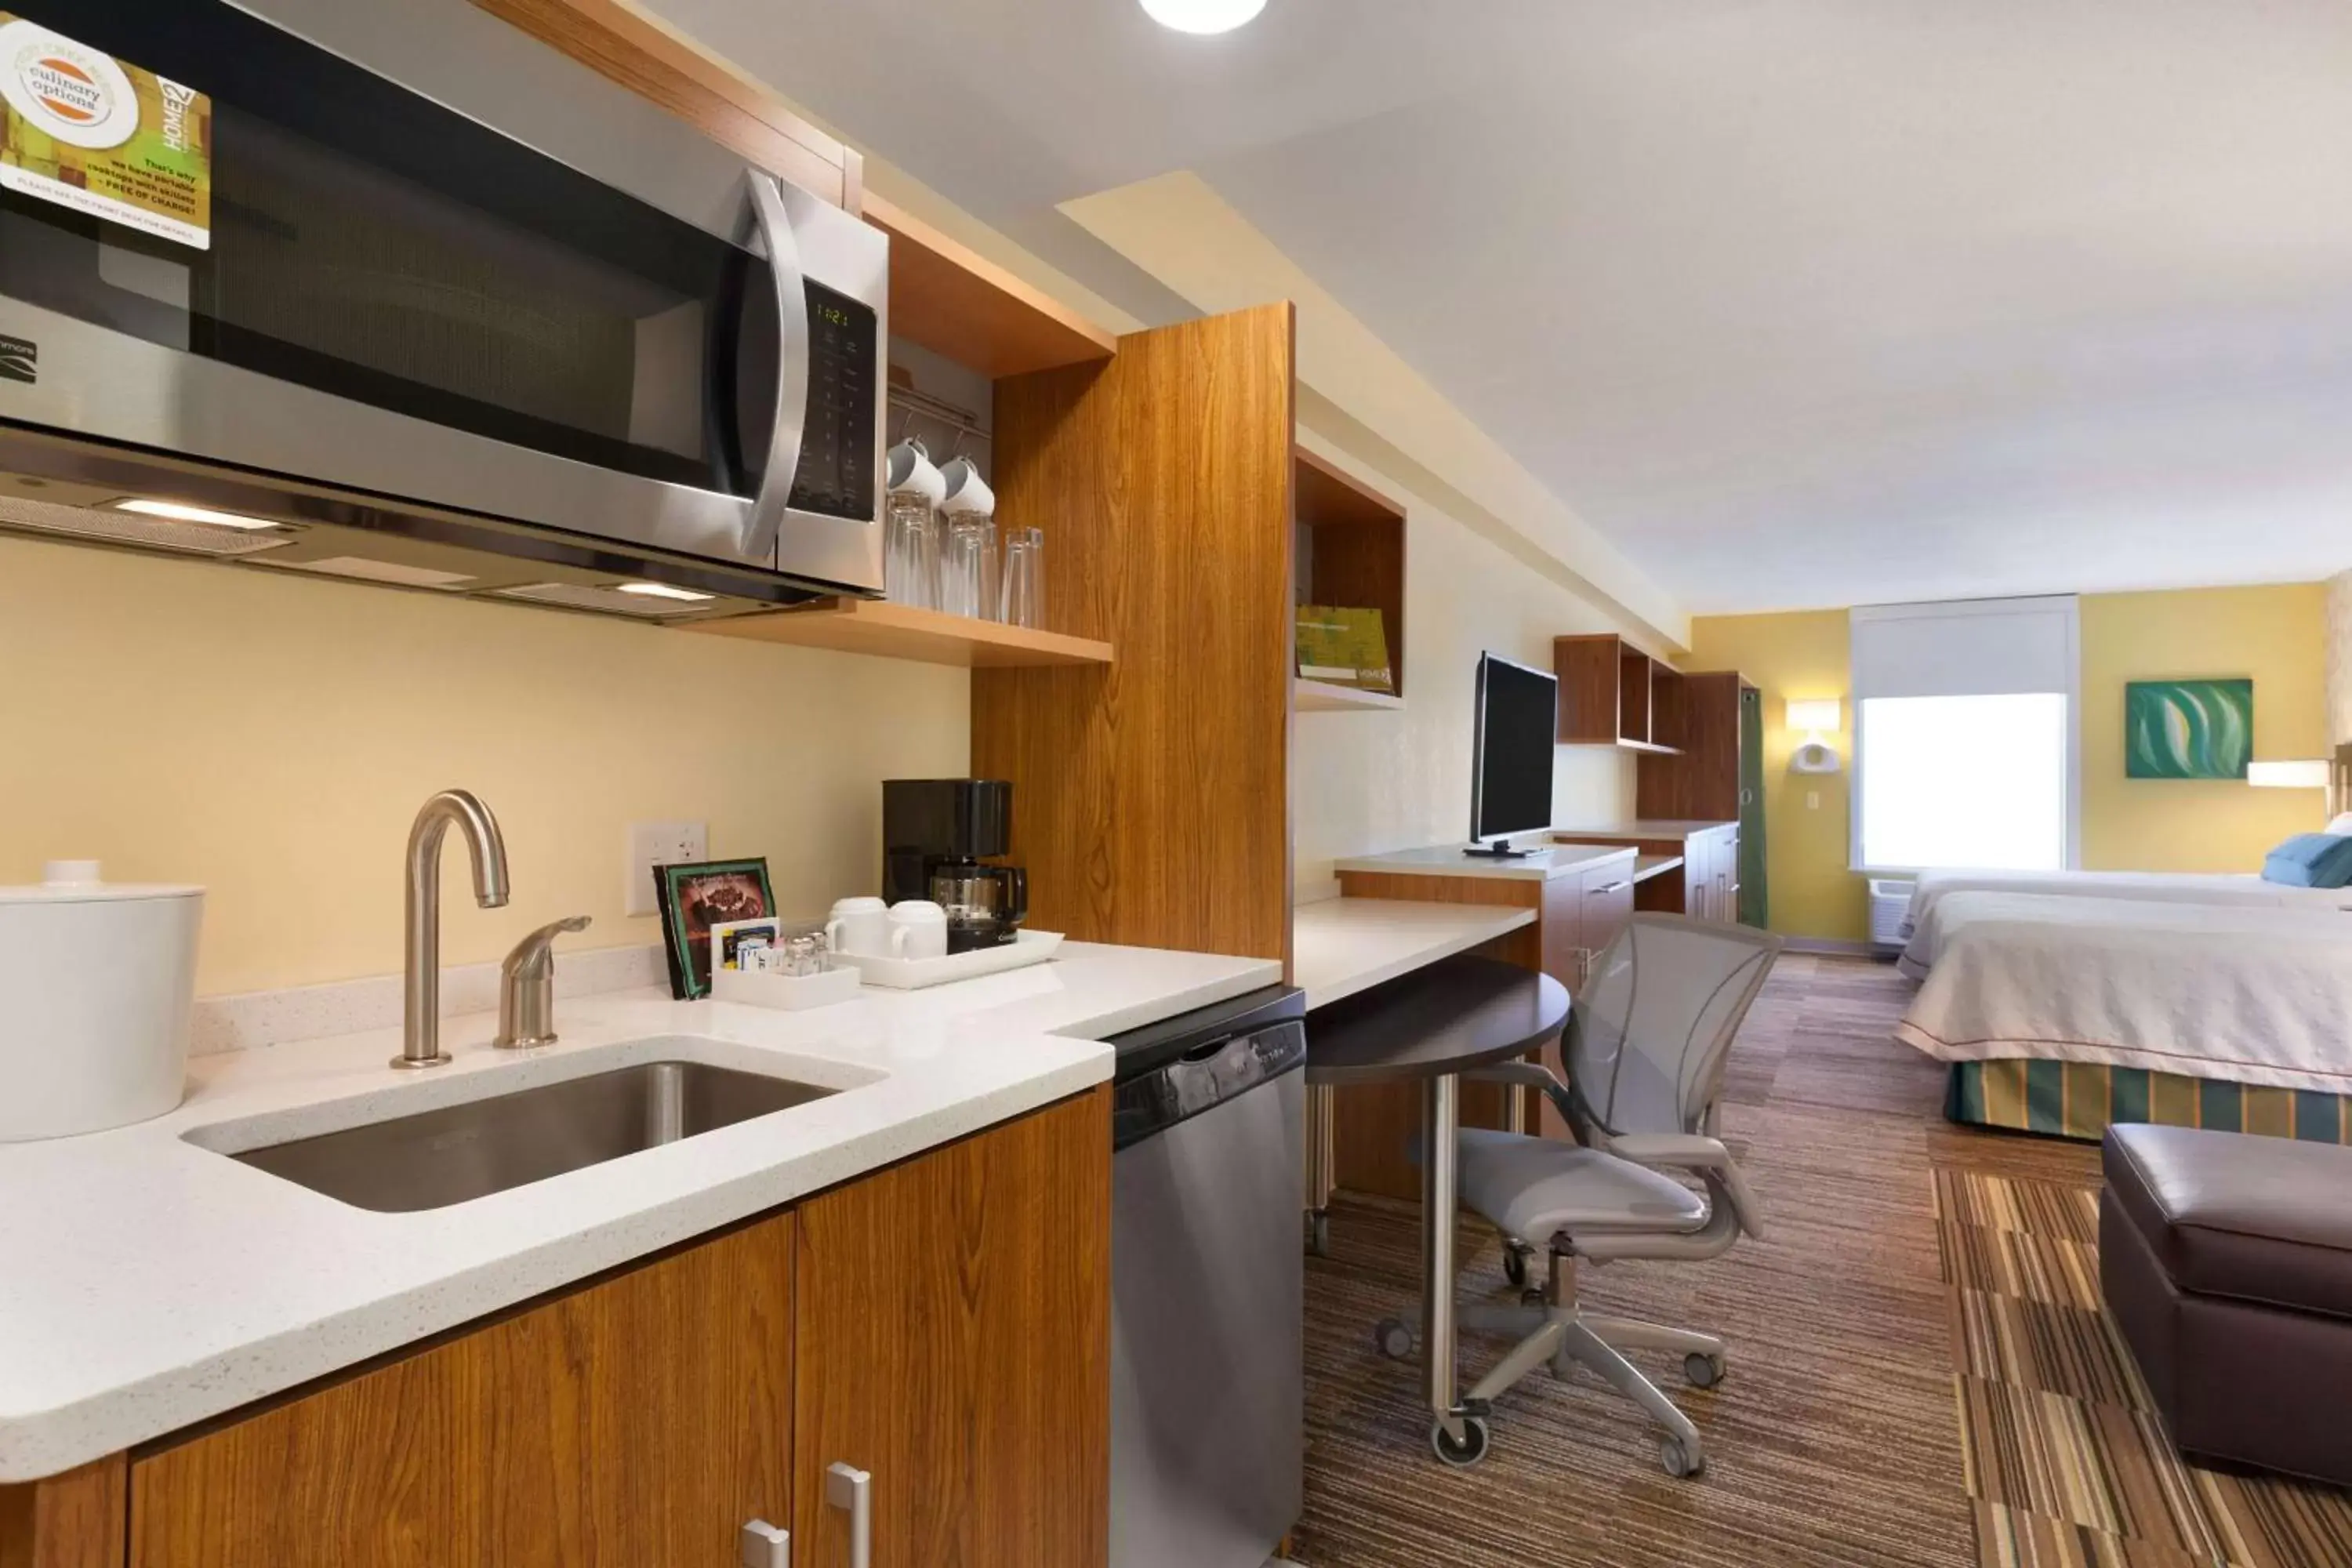 Kitchen or kitchenette, Kitchen/Kitchenette in Home2 Suites by Hilton Champaign/Urbana